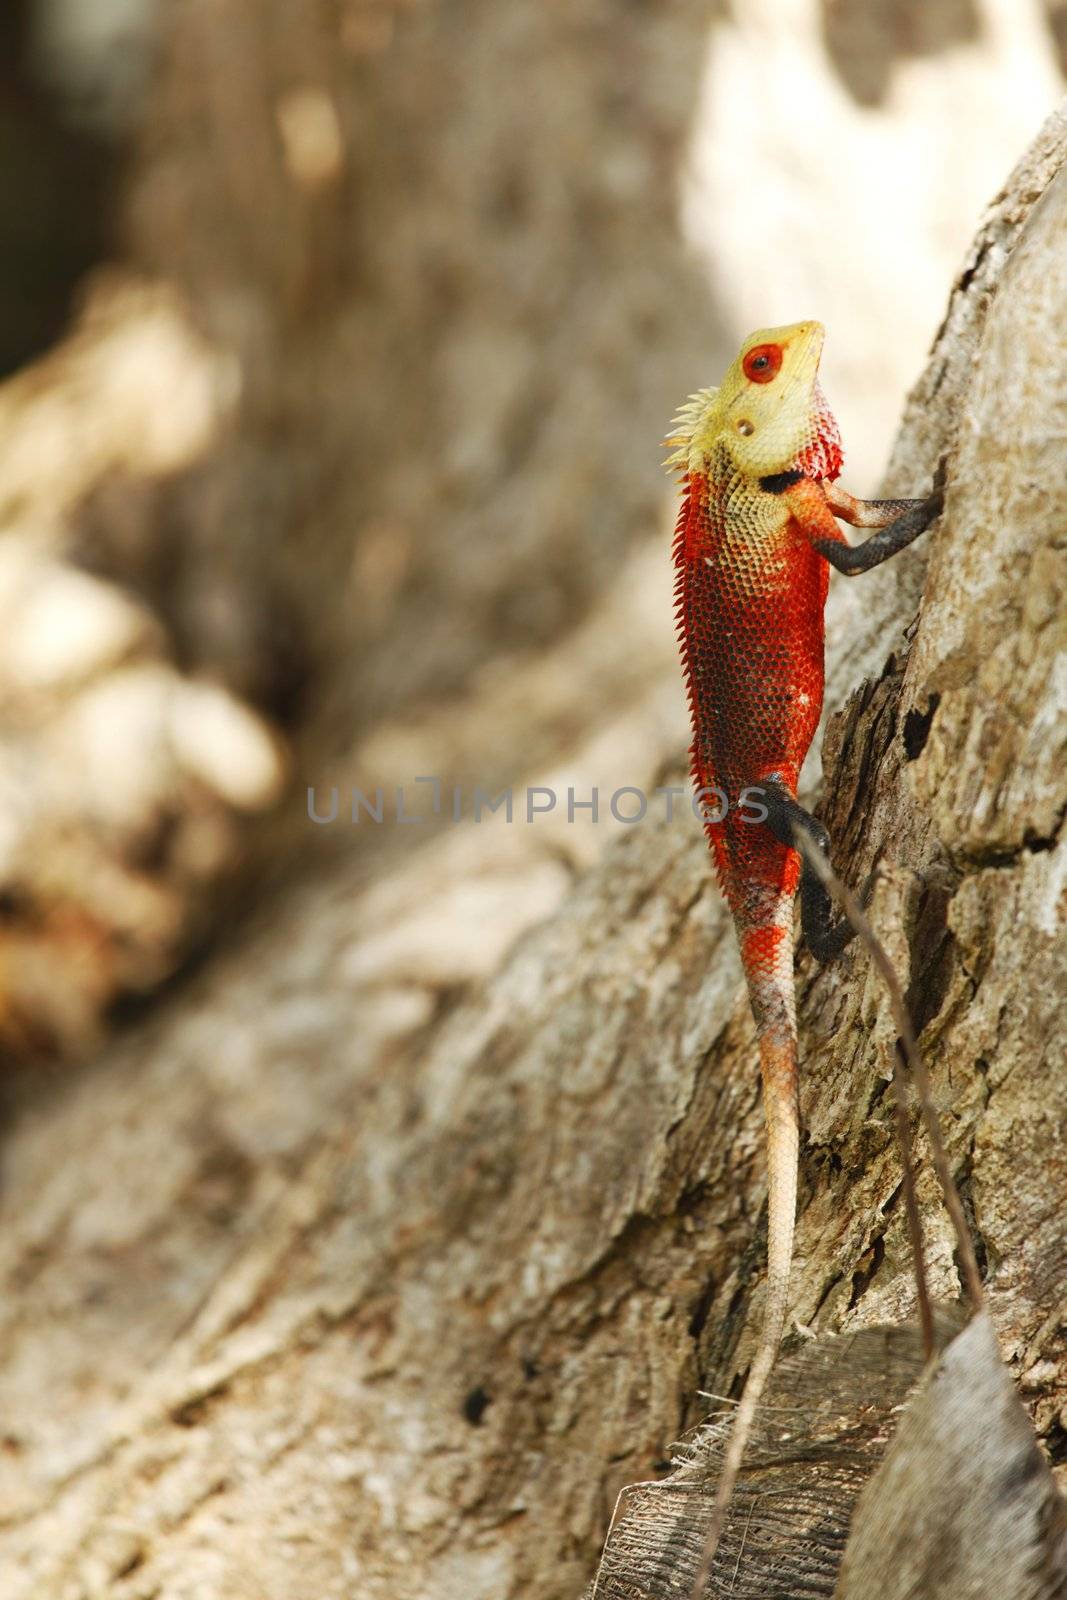 Red chameleon on bark of tree outdoors